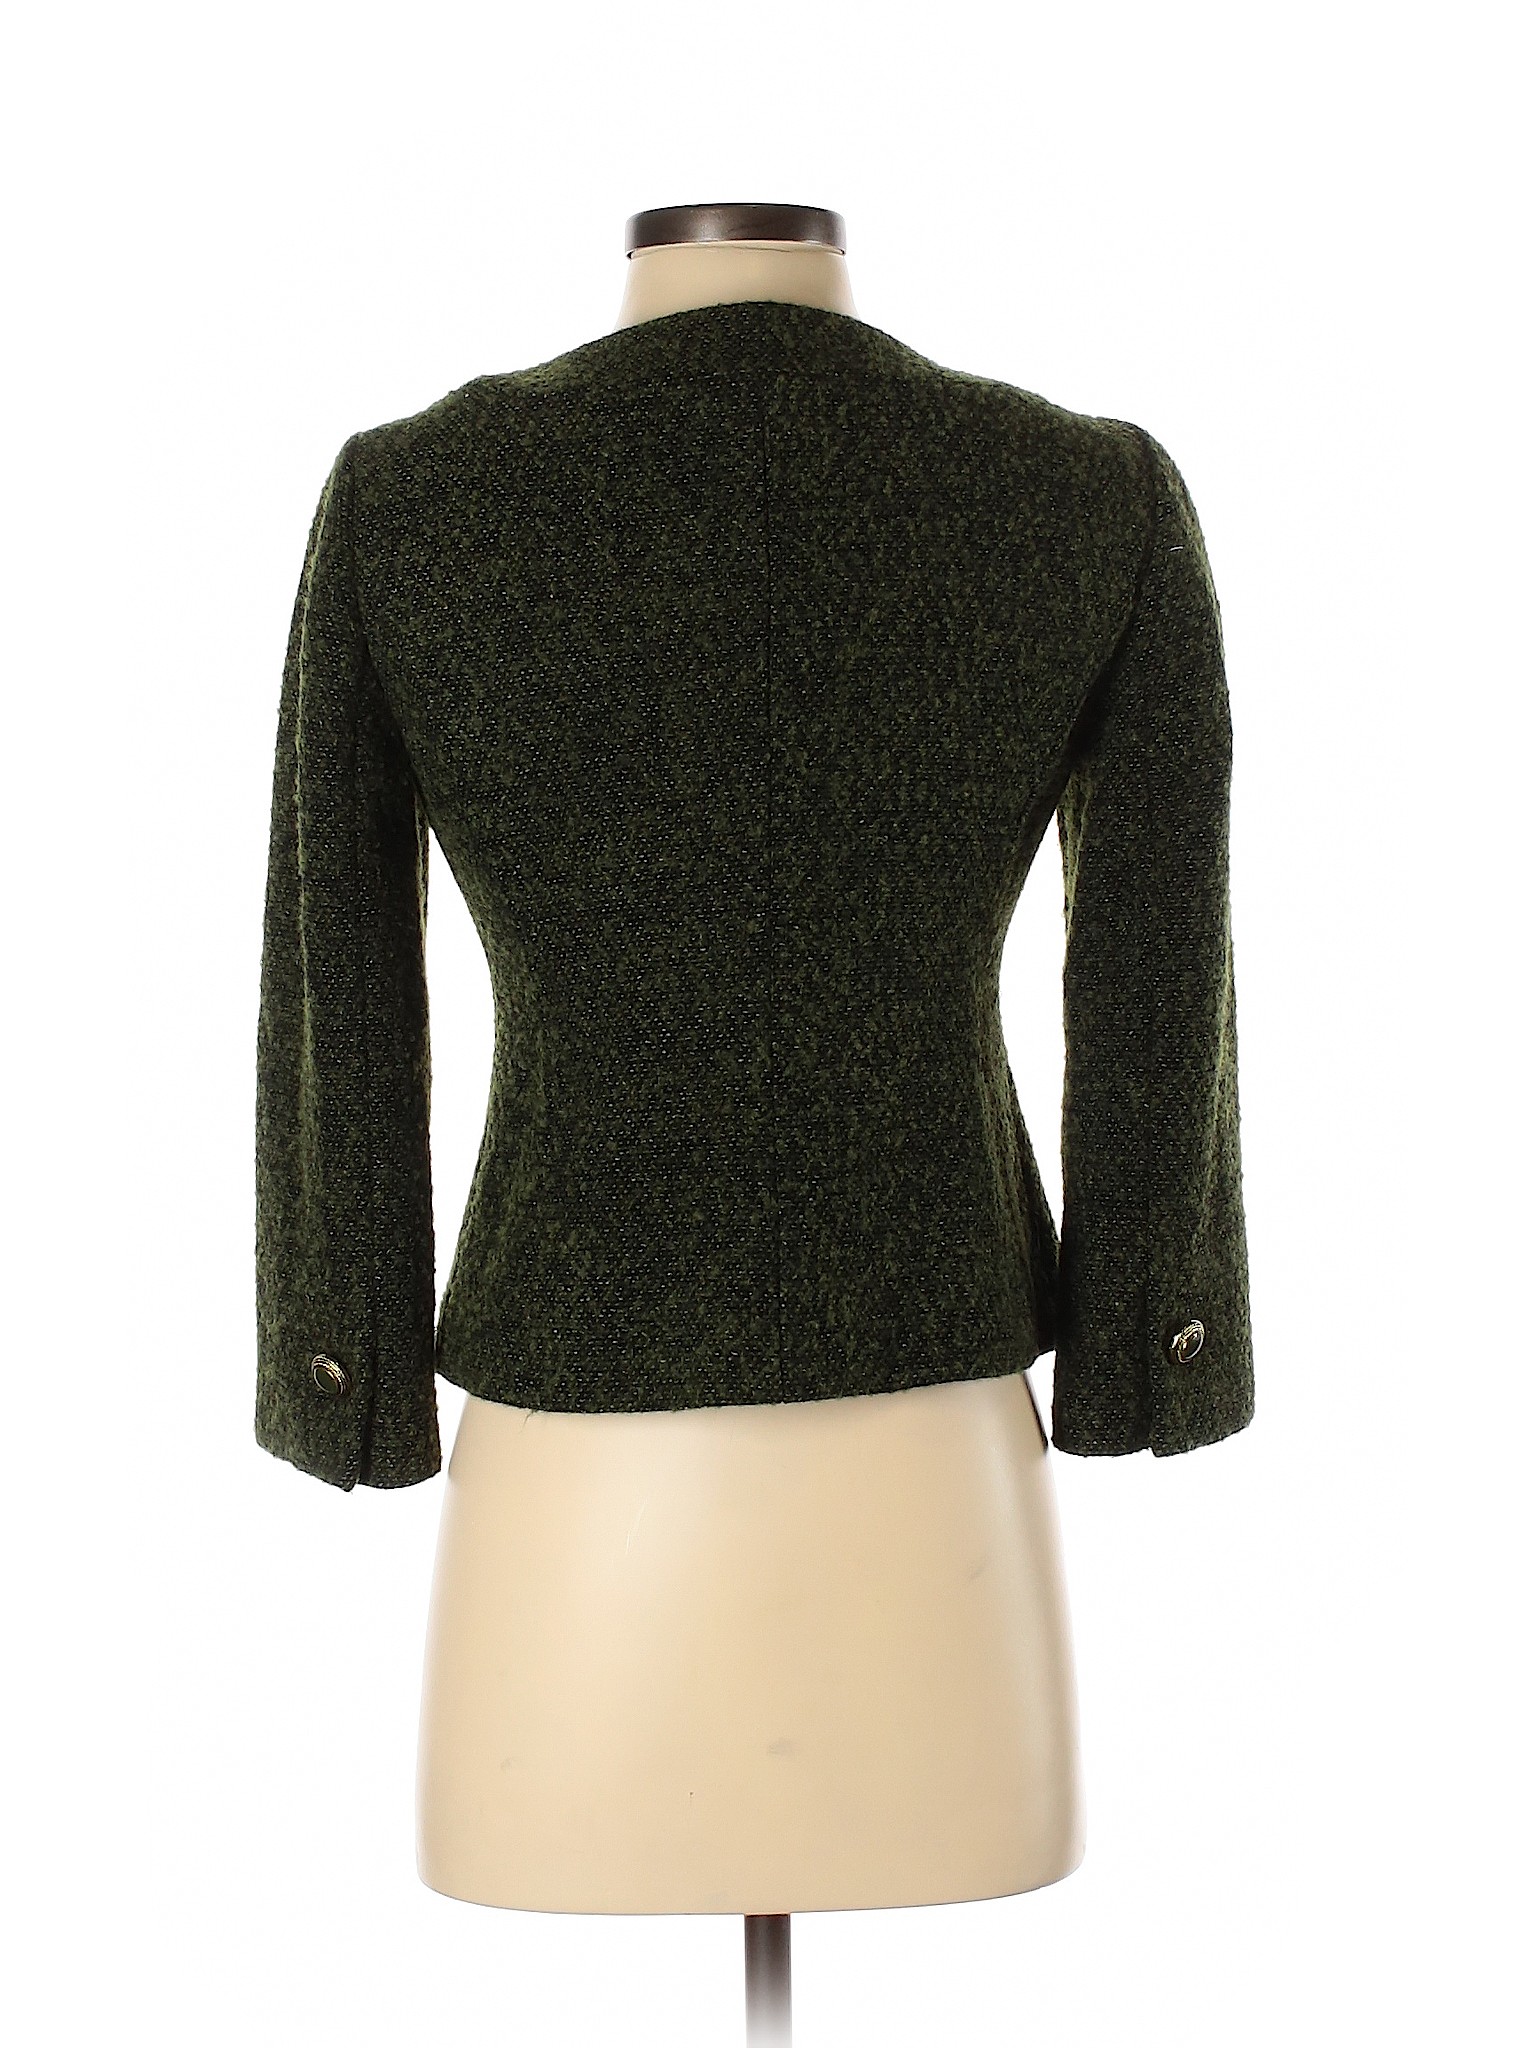 Ann Taylor LOFT Women Green Wool Coat 0 | eBay